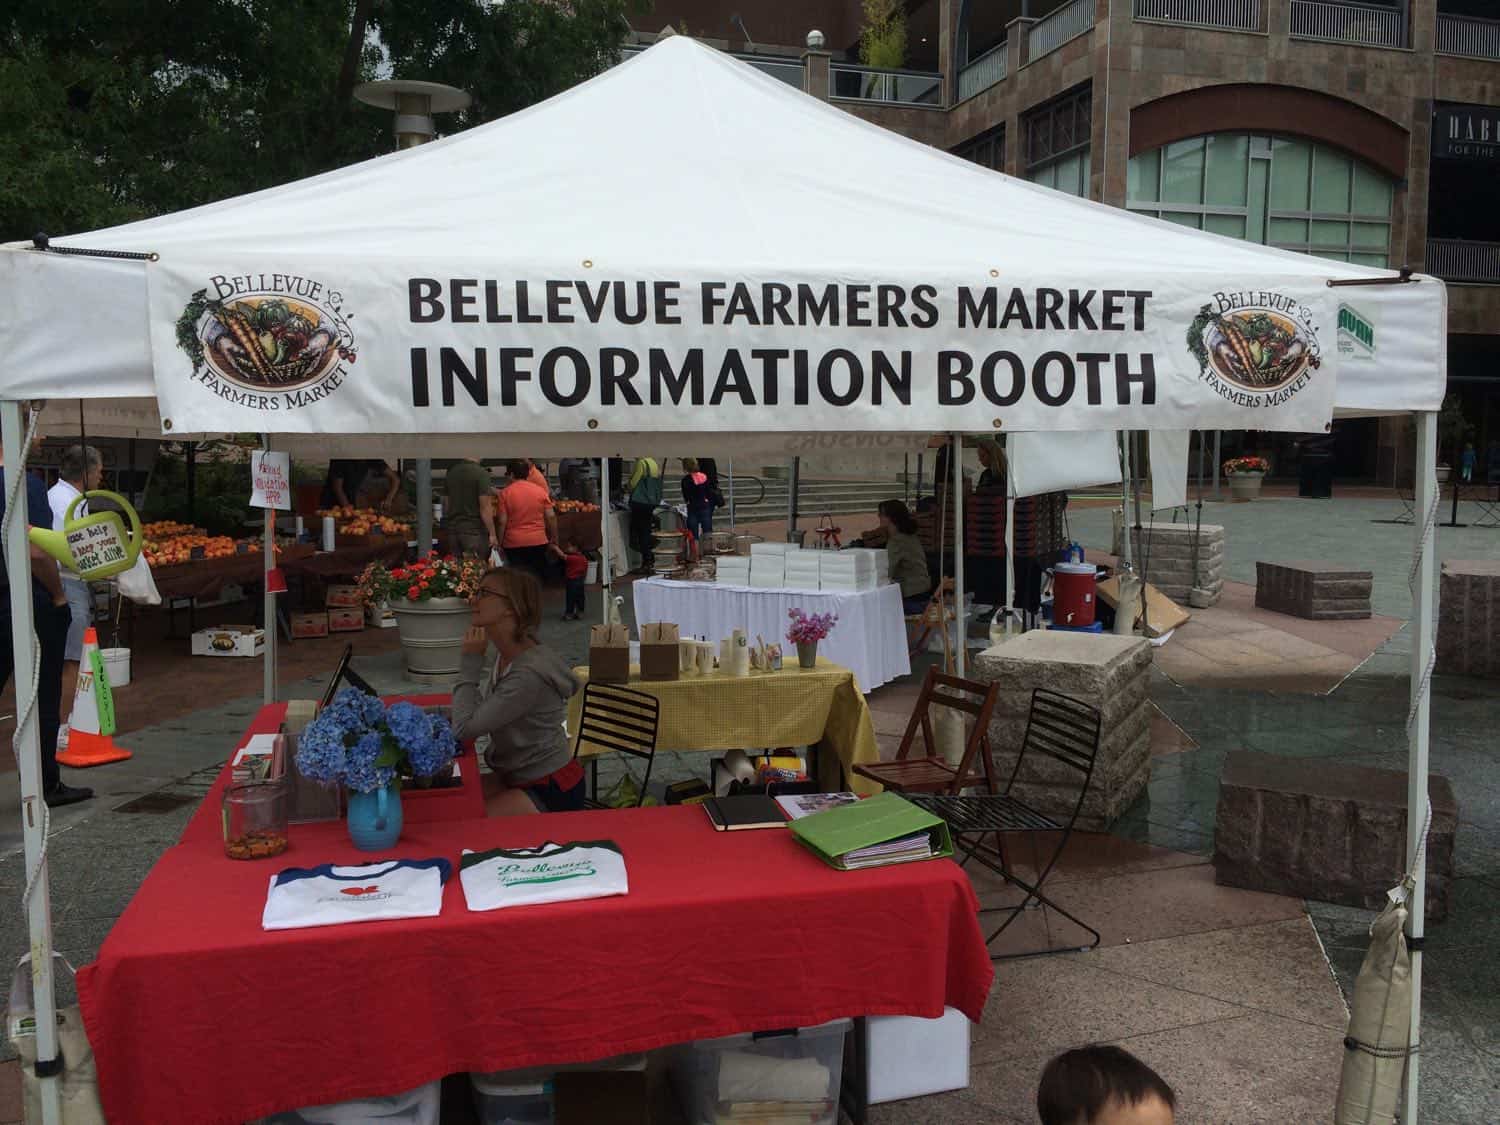 Bellevue Farmers Market